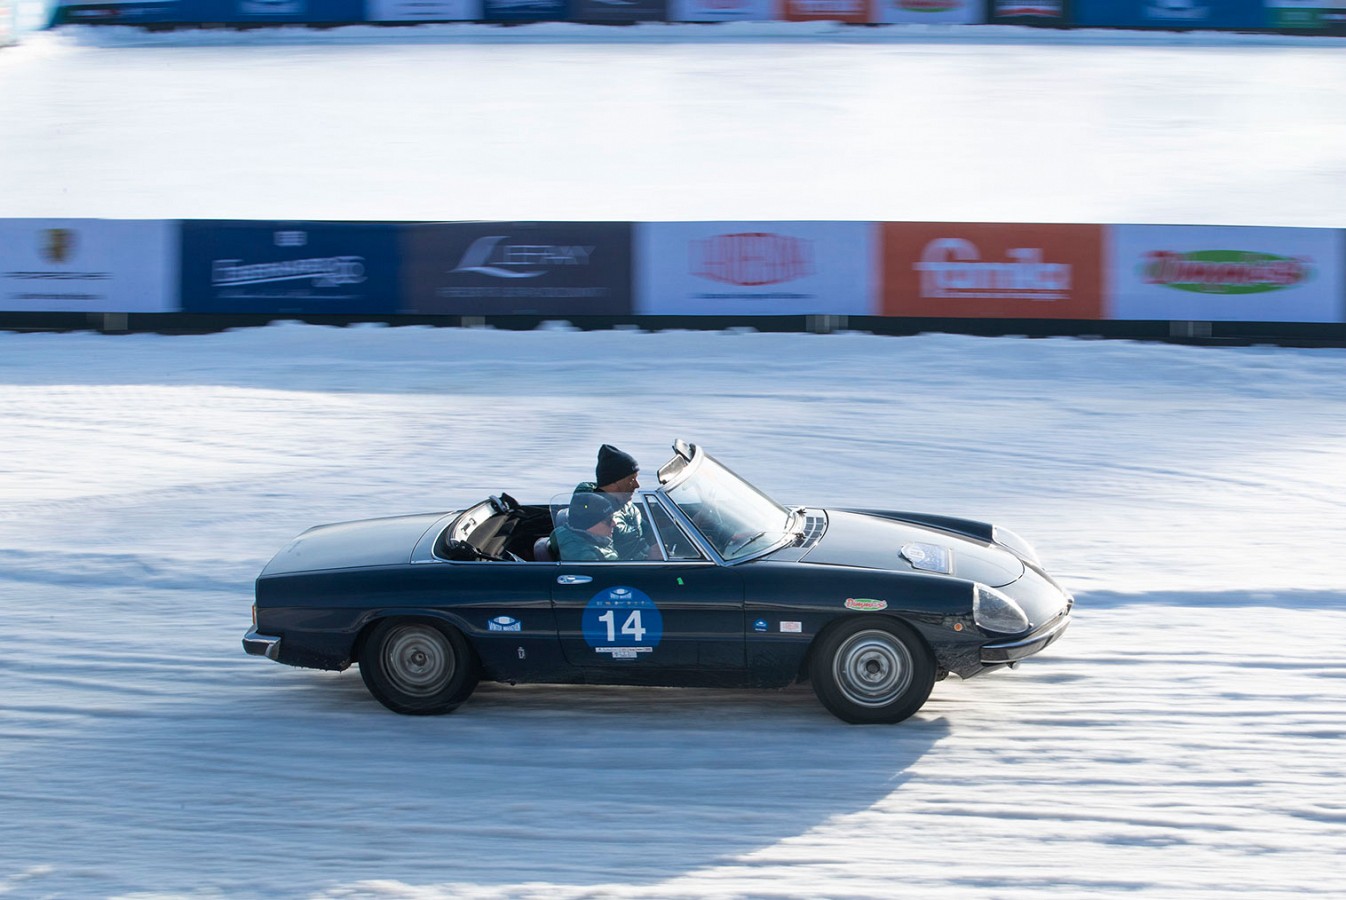 Bellini-Tiberti si aggiudicano il Trofeo Eberhard sul lago ghiacciato